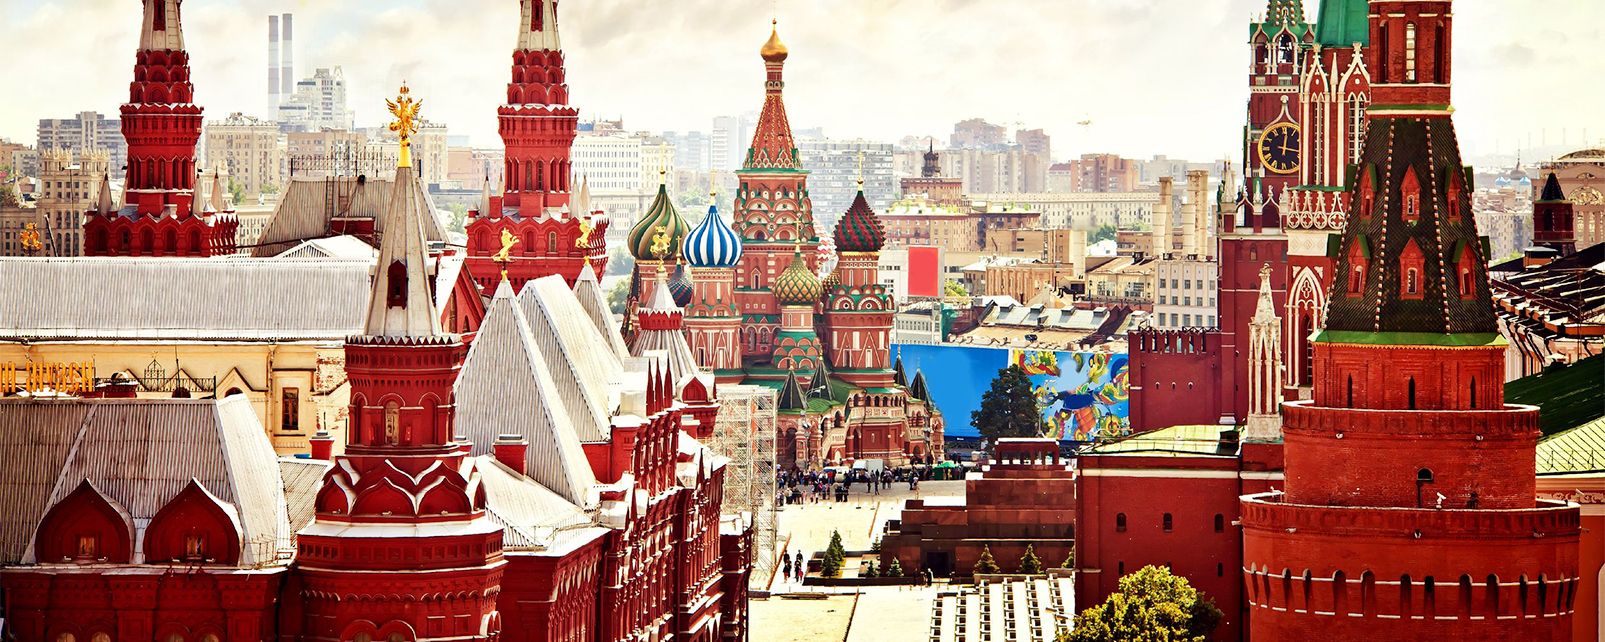 لیدر مسکو |رزرو آنلاین تور لیدر مسکو و مترجم مسکو و راهنمای محلی مسکو با کمترین قیمت